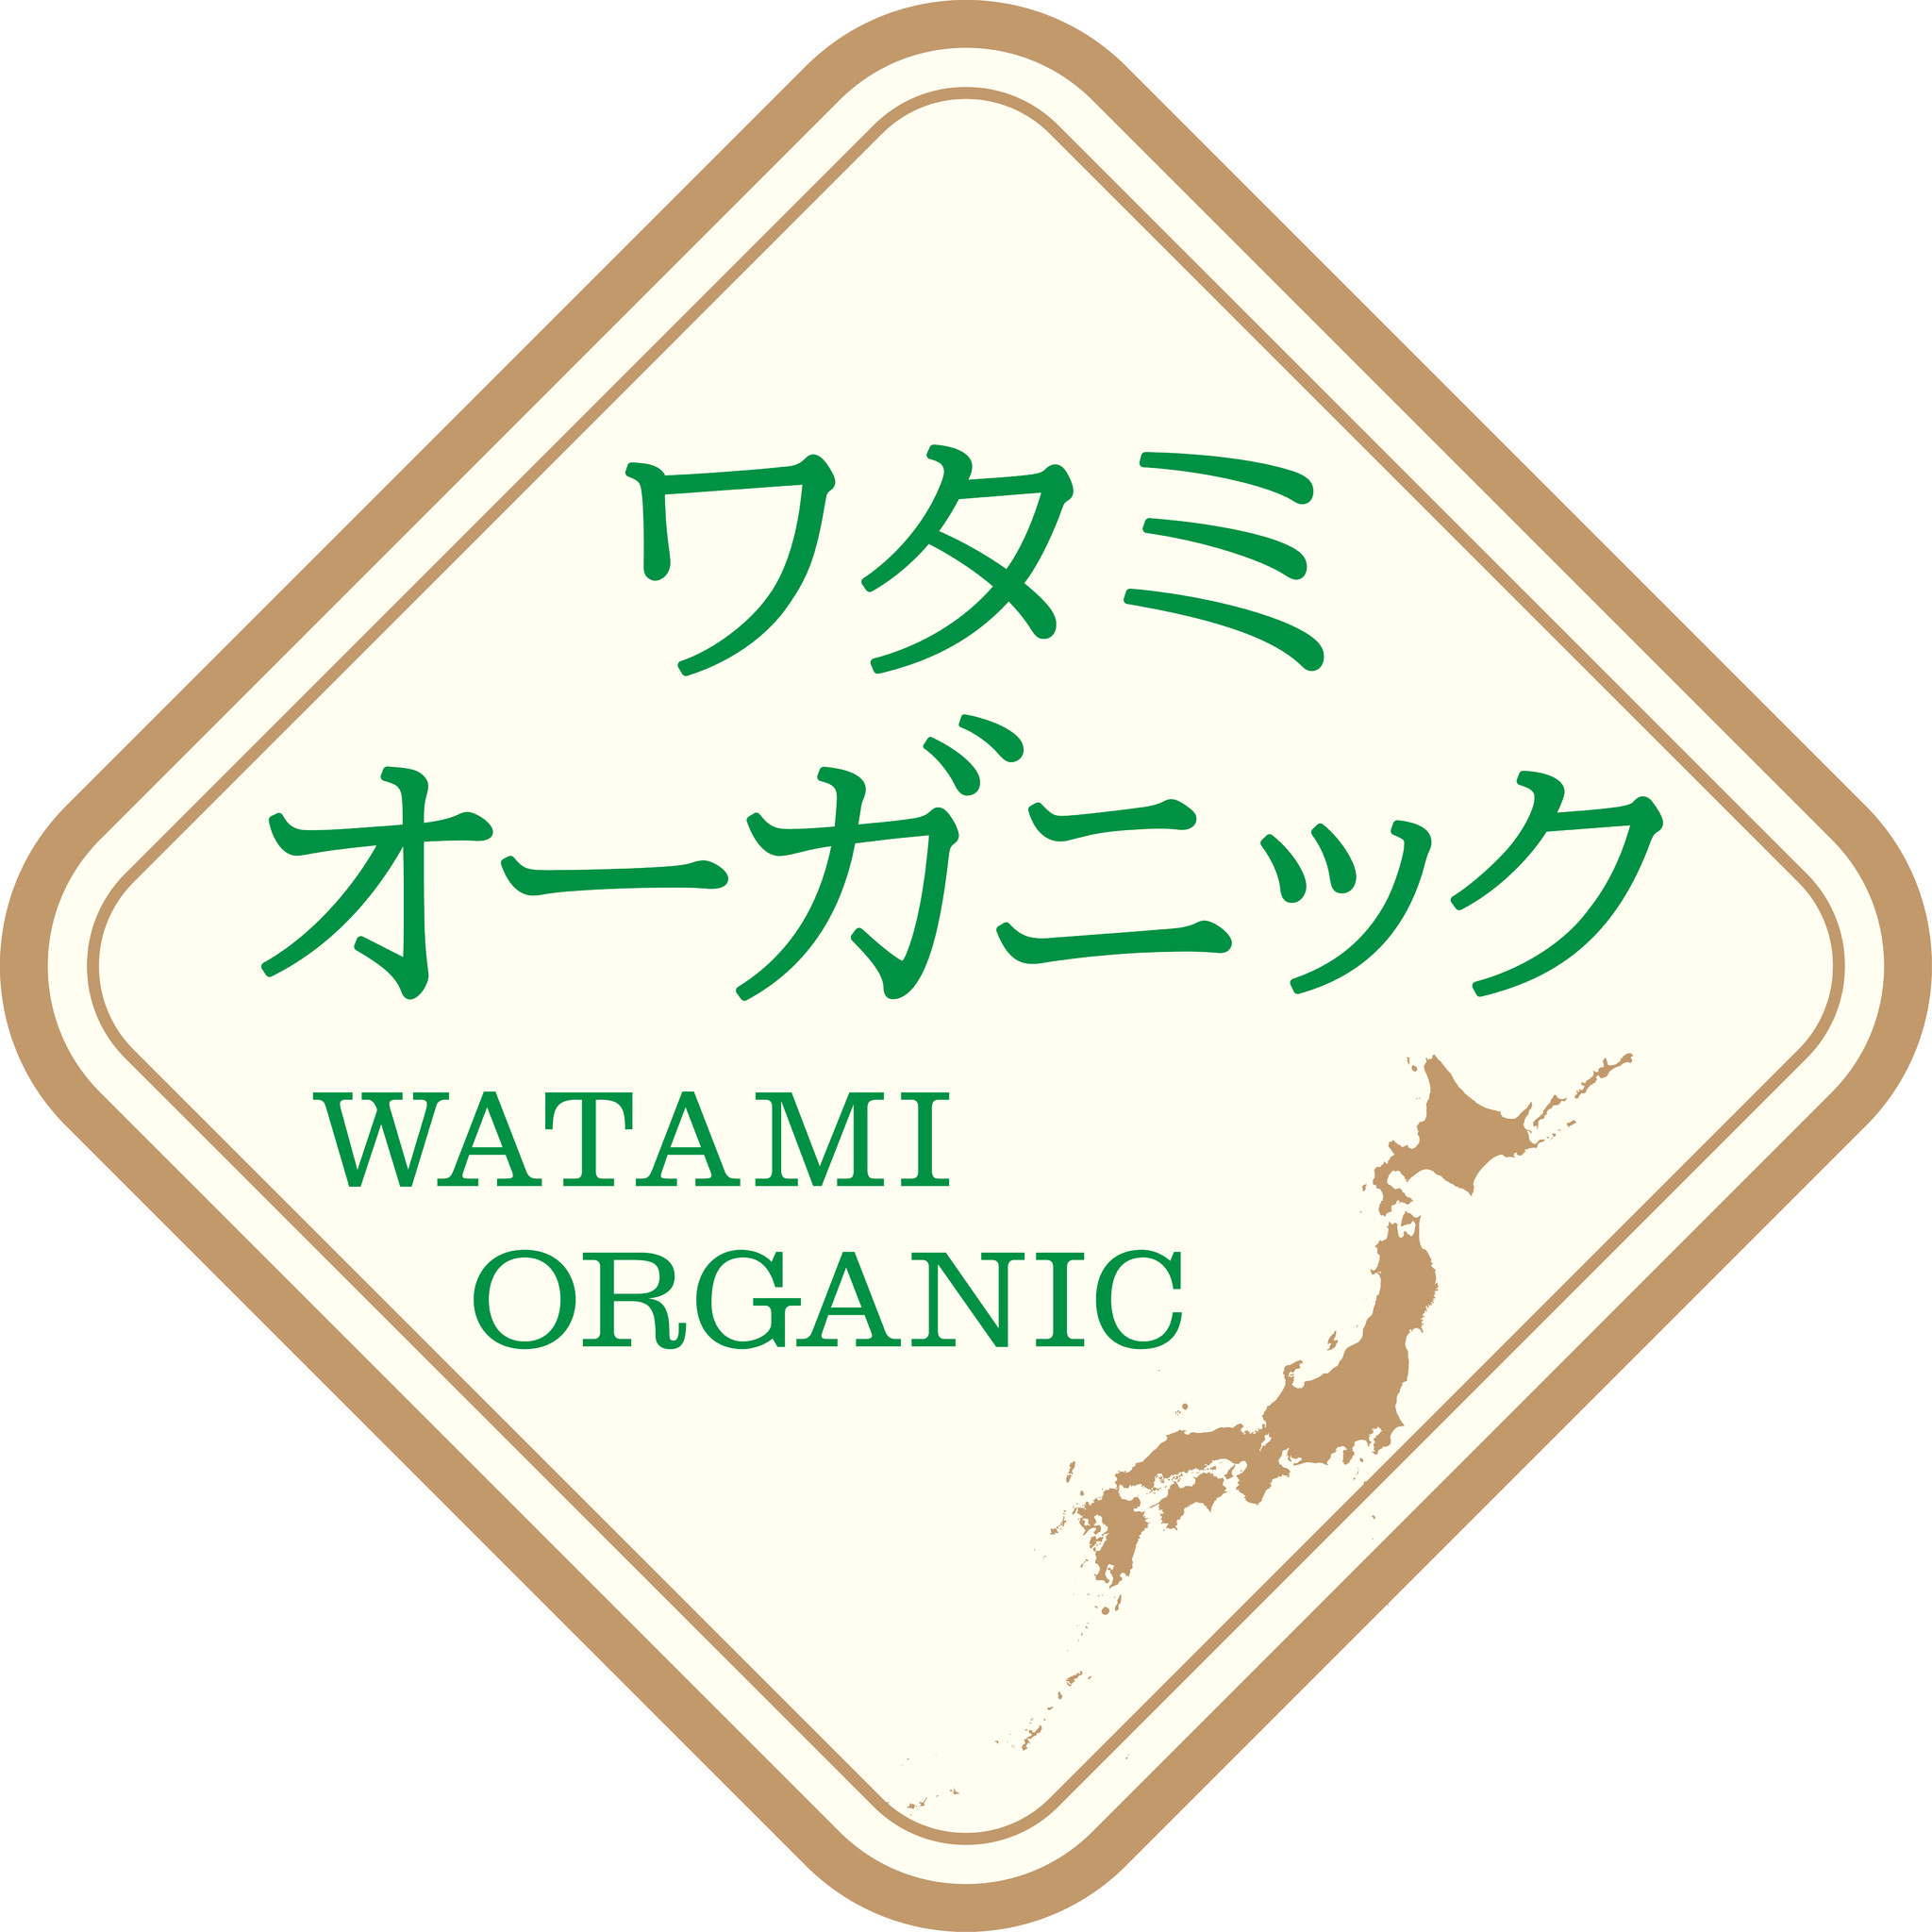 ワタミグループ オーガニック原料 野菜を使用したメニューに19年11月14日 木 より ワタミオーガニックマーク を導入 ワタミ 株式会社のプレスリリース